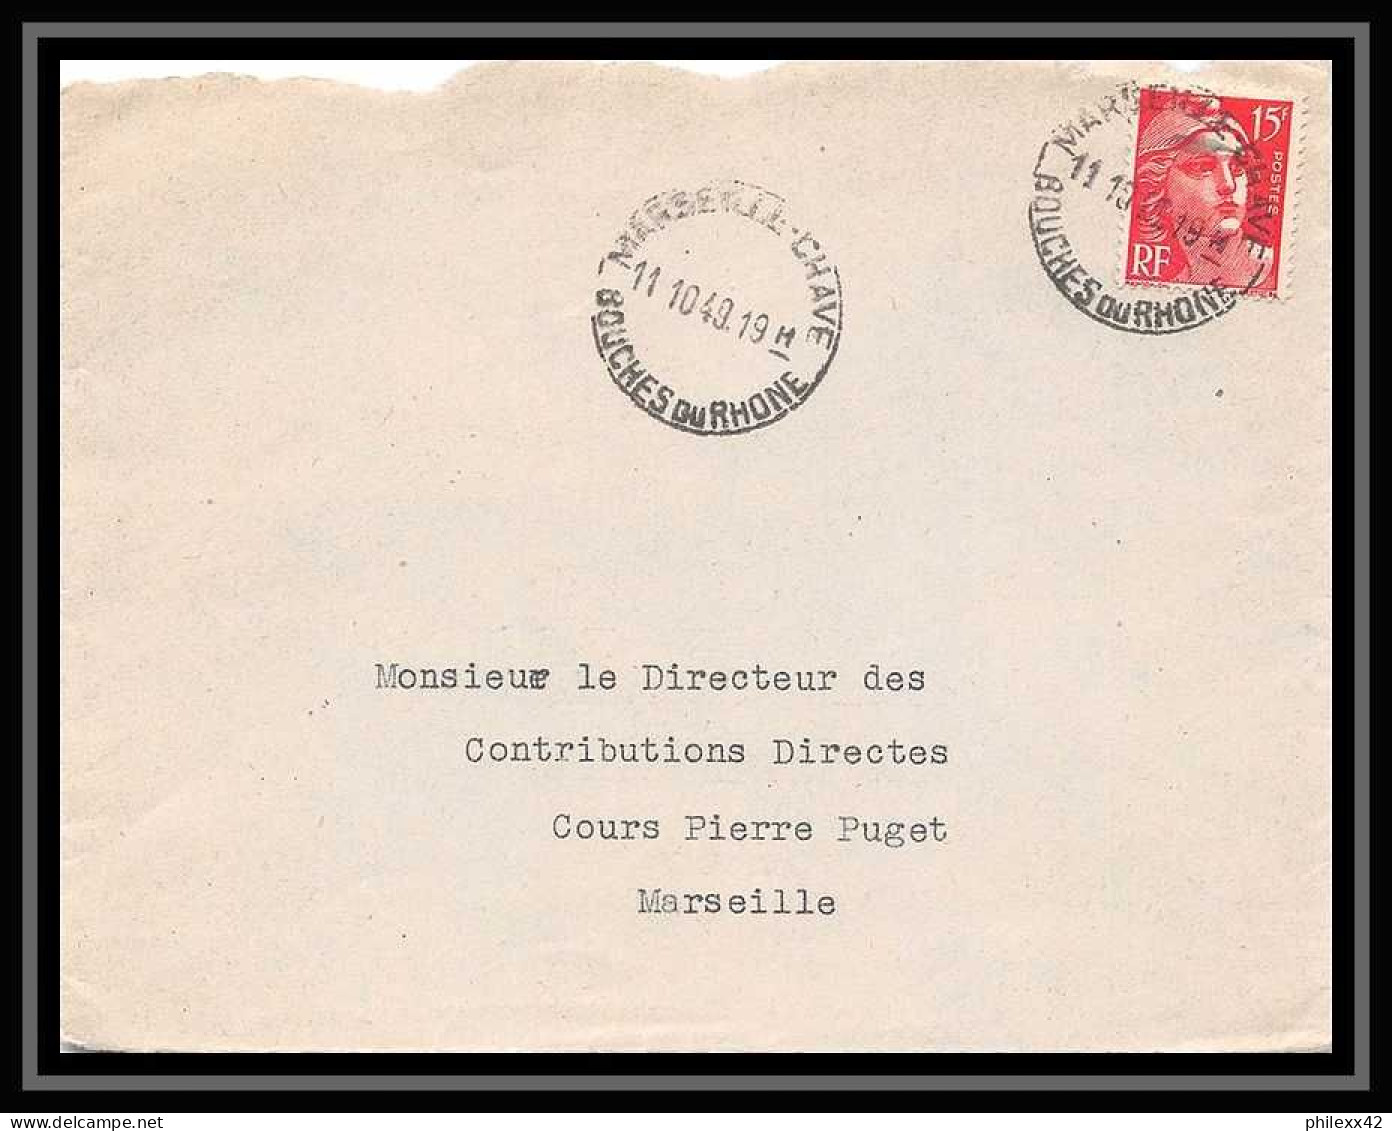 110354 lot de 27 lettres dont recommandé Carte postale (postcard) Bouches du rhone Marseille chave gare ... 